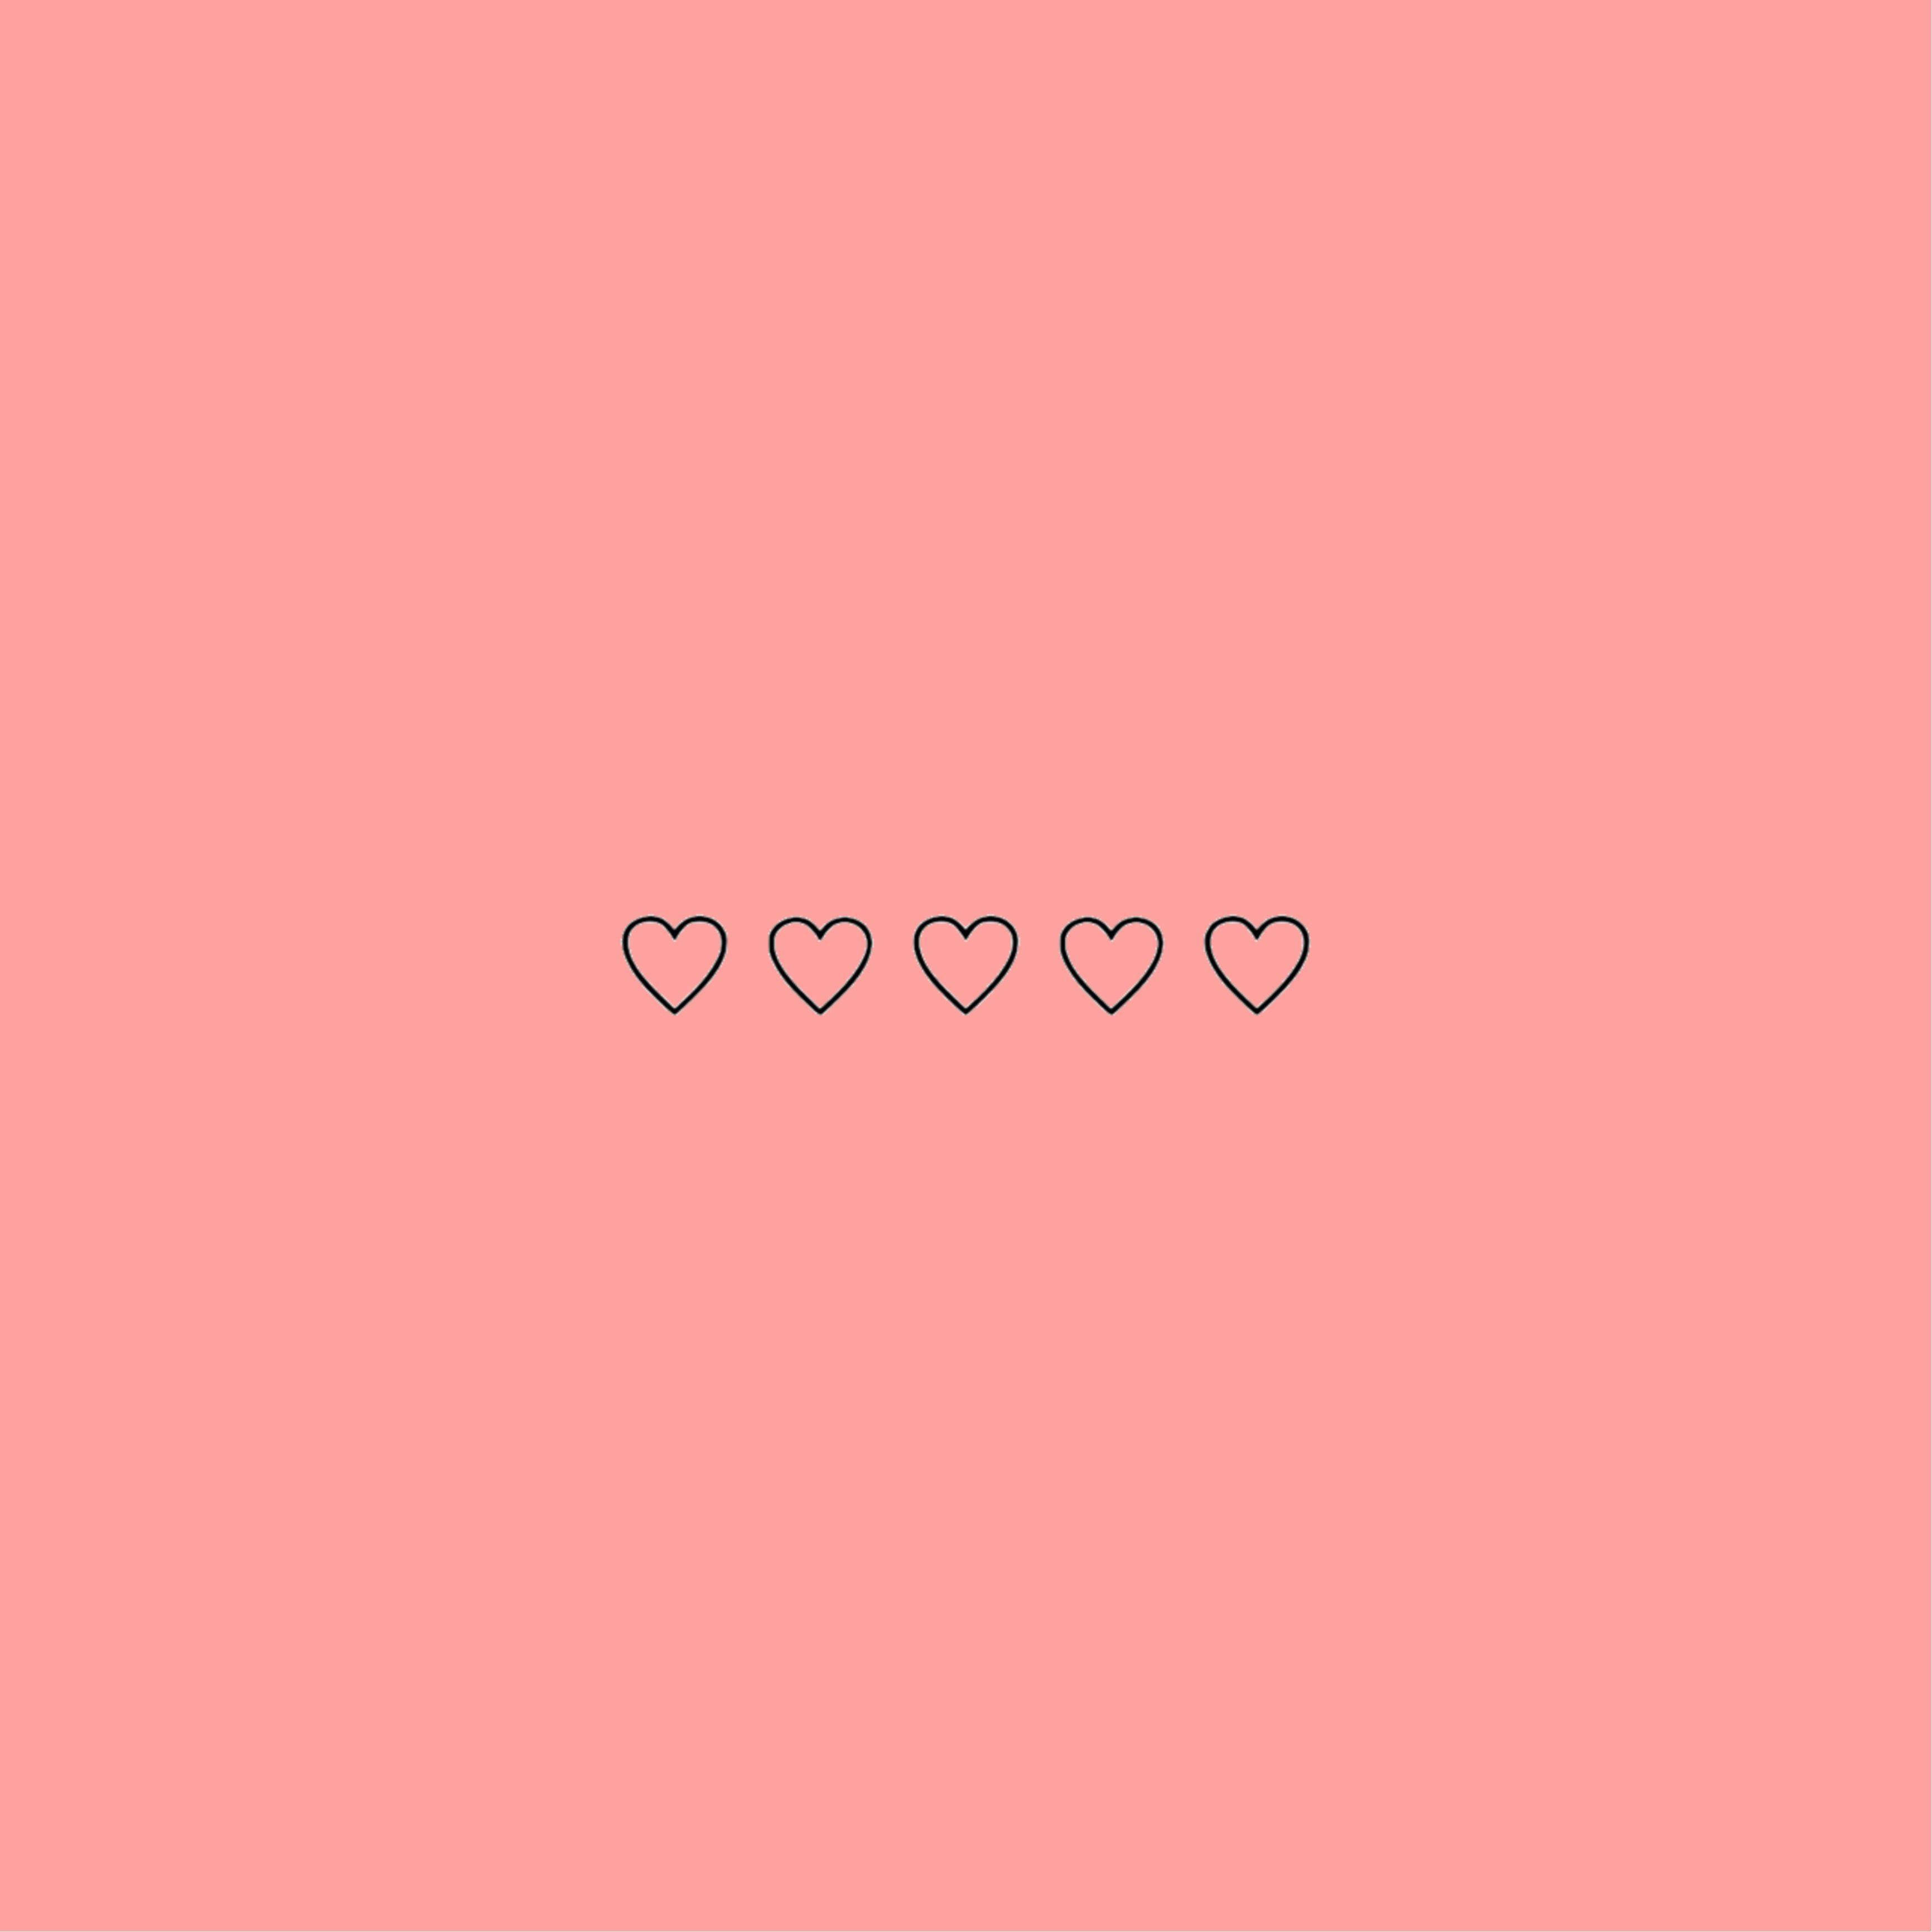 Tải hình nền hình trái tim tối giản màu hồng: Những hình nền với trái tim tối giản và màu hồng pastel sẽ đem lại sự thanh lịch và tinh tế cho thiết bị của bạn. Tải ngay hình nền này để làm mới giao diện điện thoại hoặc máy tính của mình.